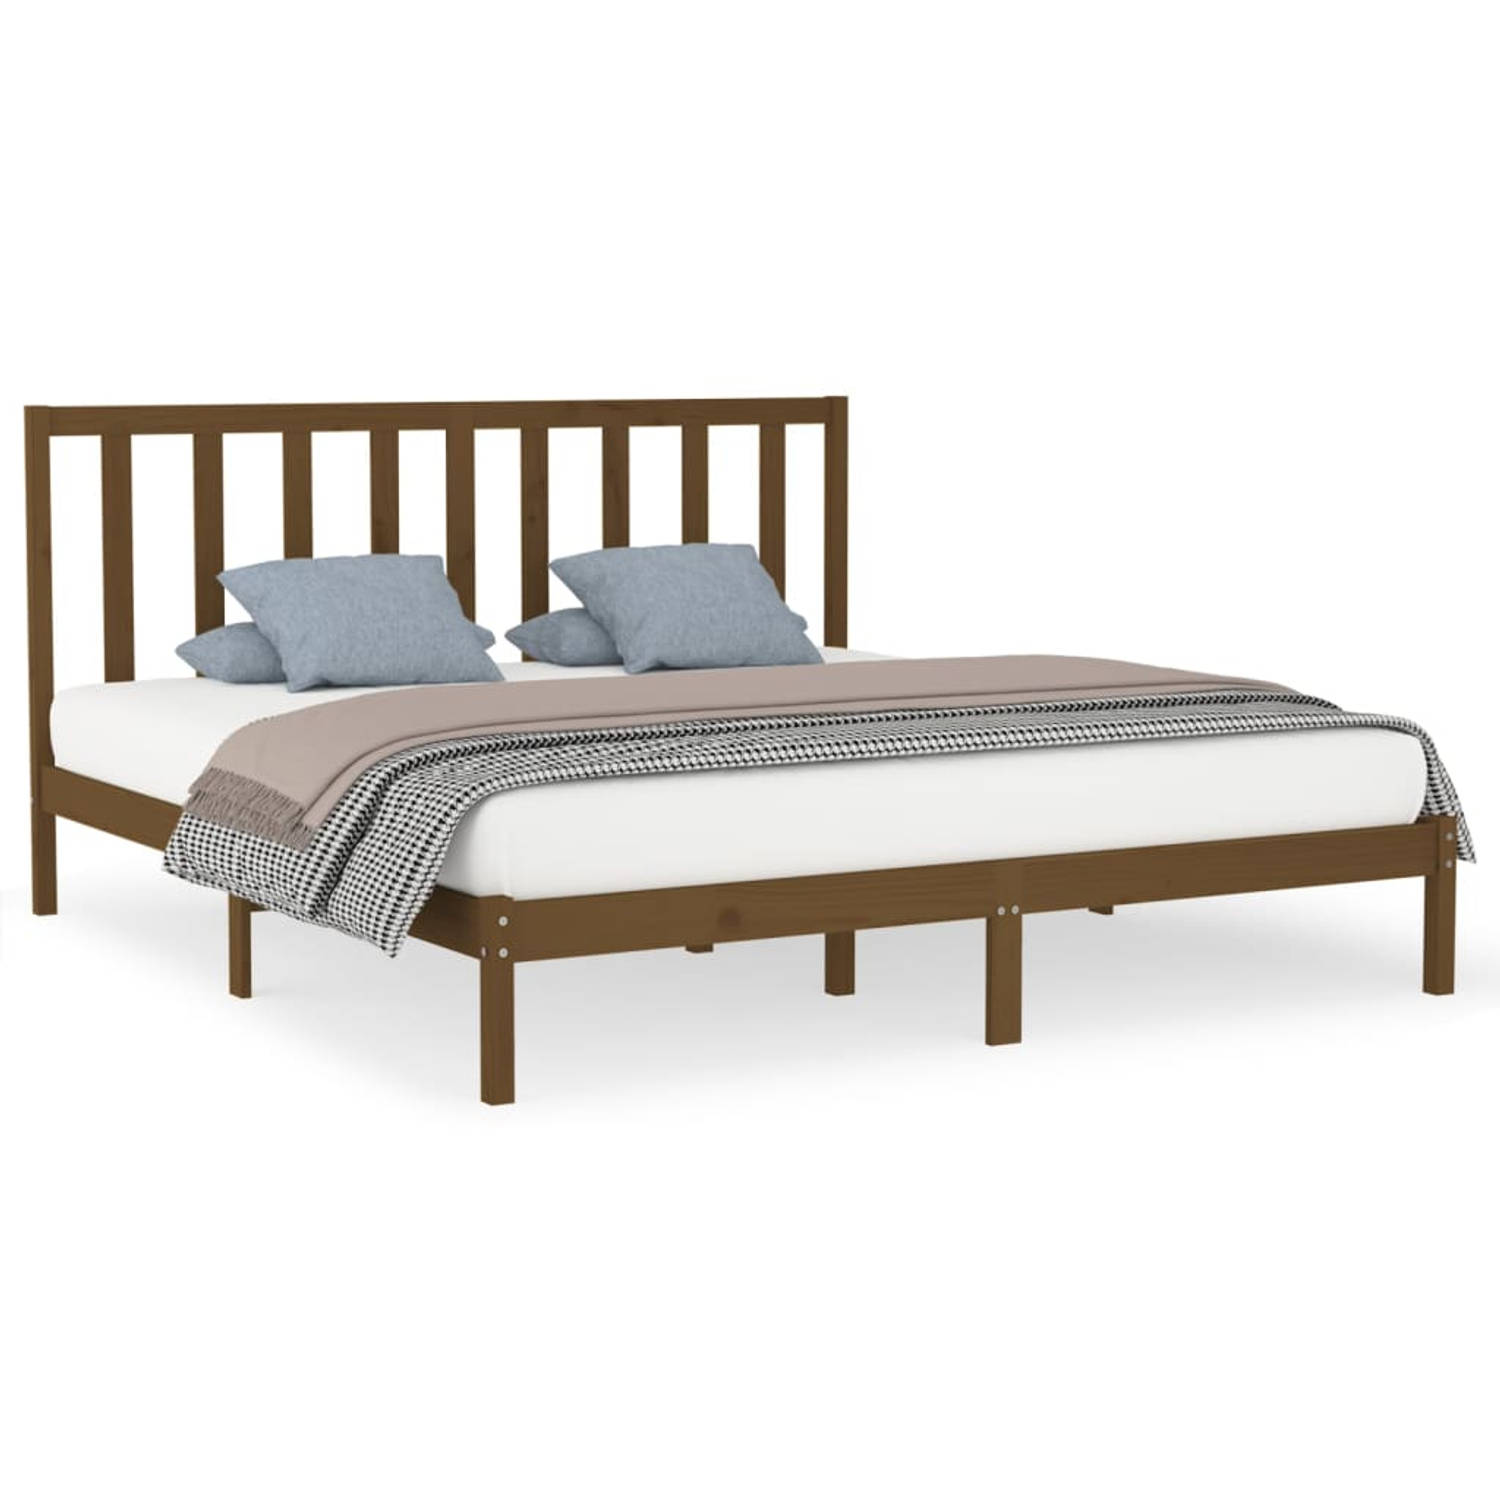 The Living Store Bedframe massief hout honingbruin 200x200 cm - Bedframe - Bedframes - Tweepersoonsbed - Bed - Bedombouw - Dubbel Bed - Frame - Bed Frame - Ledikant - Bedframe Met